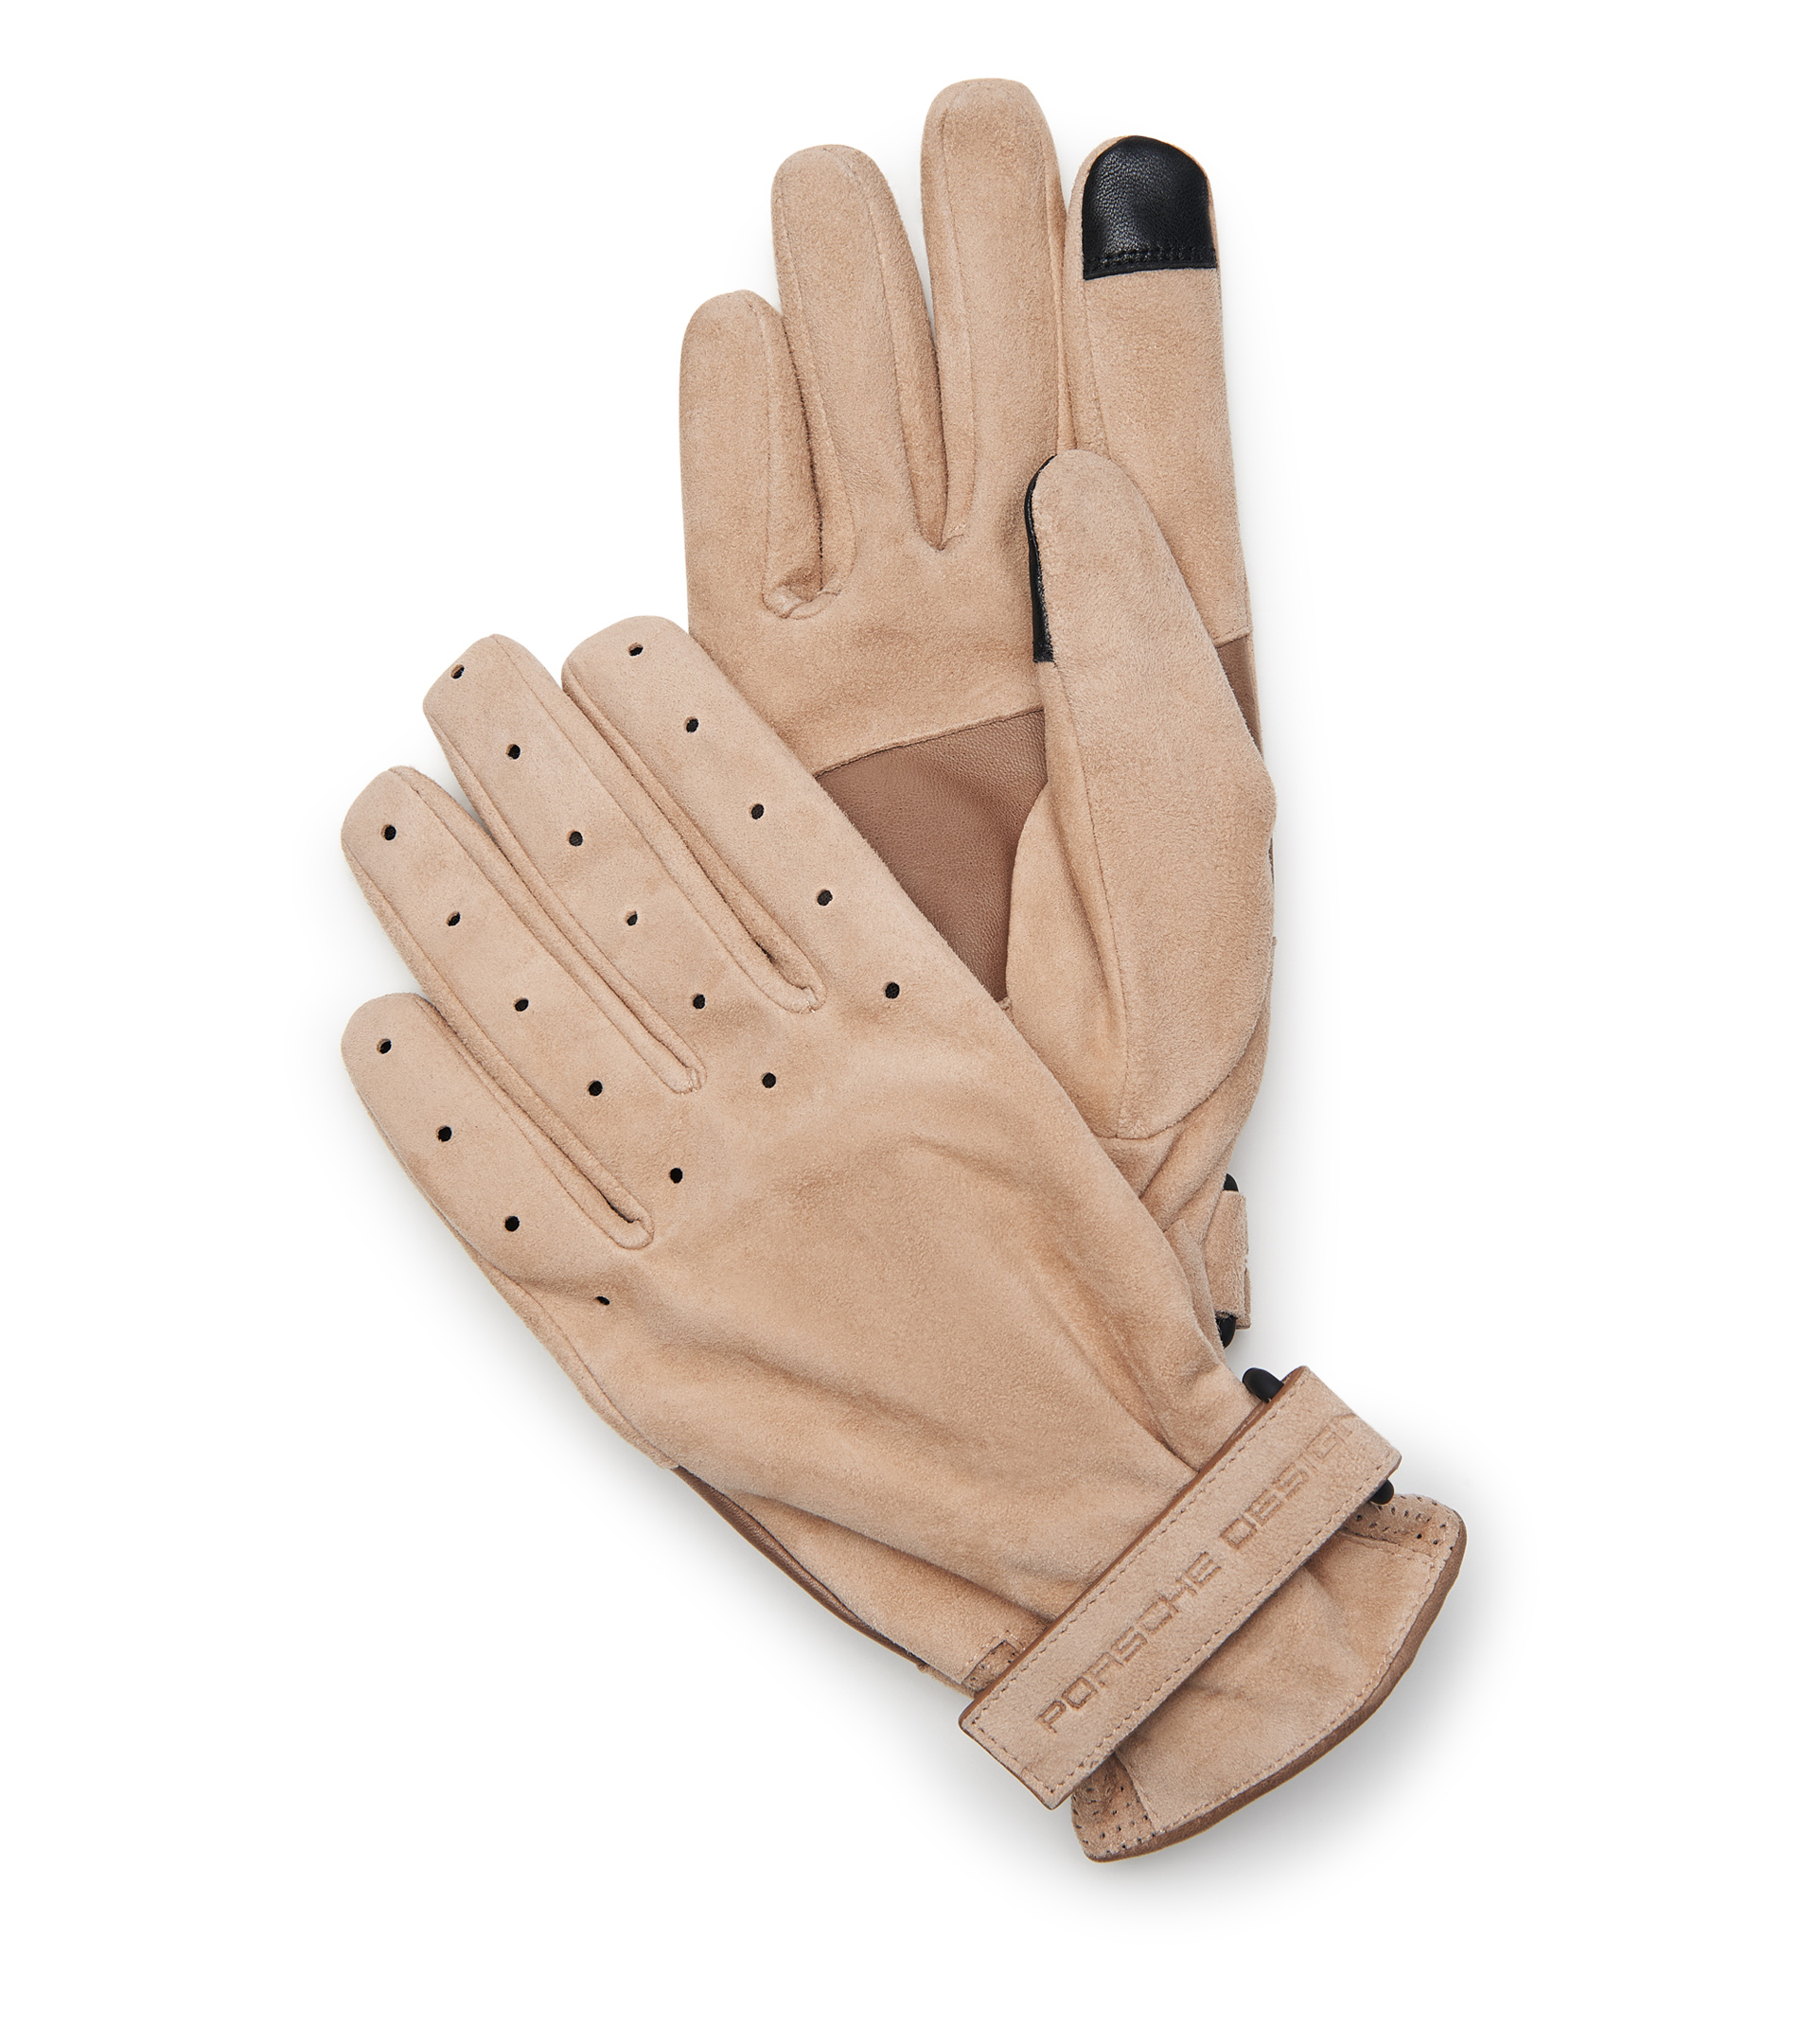 Gabriel Check Glove in Beige FWRD Men Accessories Gloves 